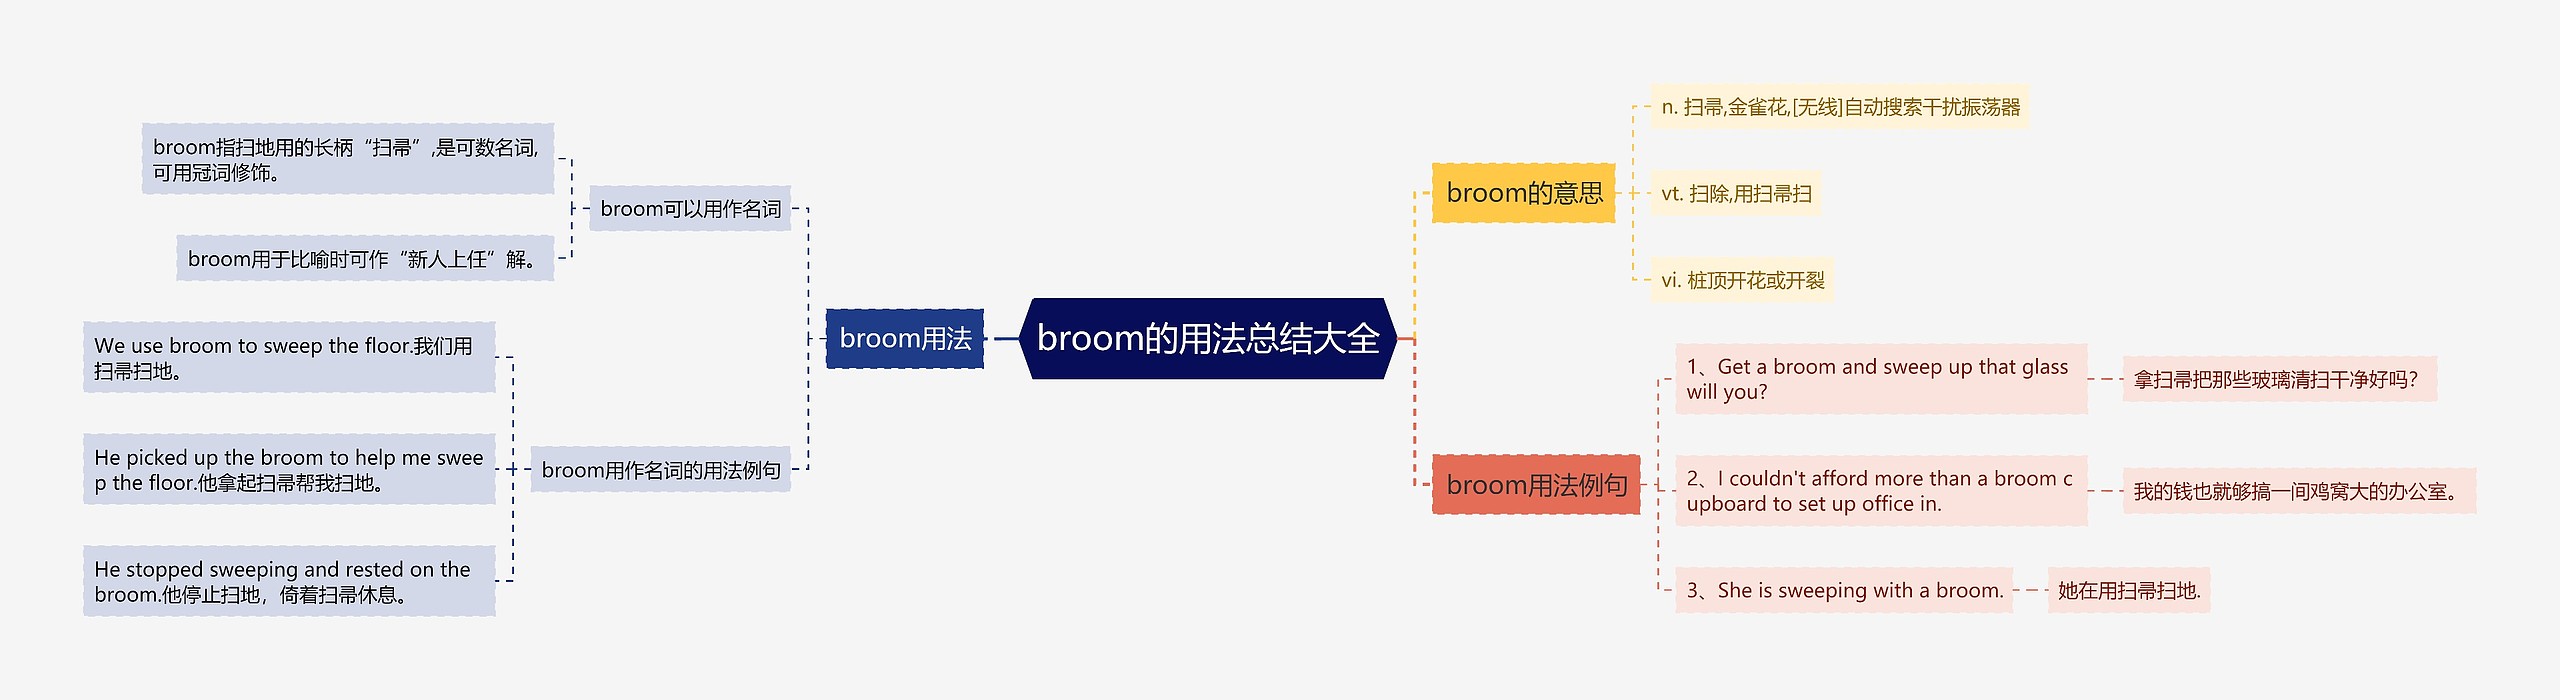 broom的用法总结大全思维导图